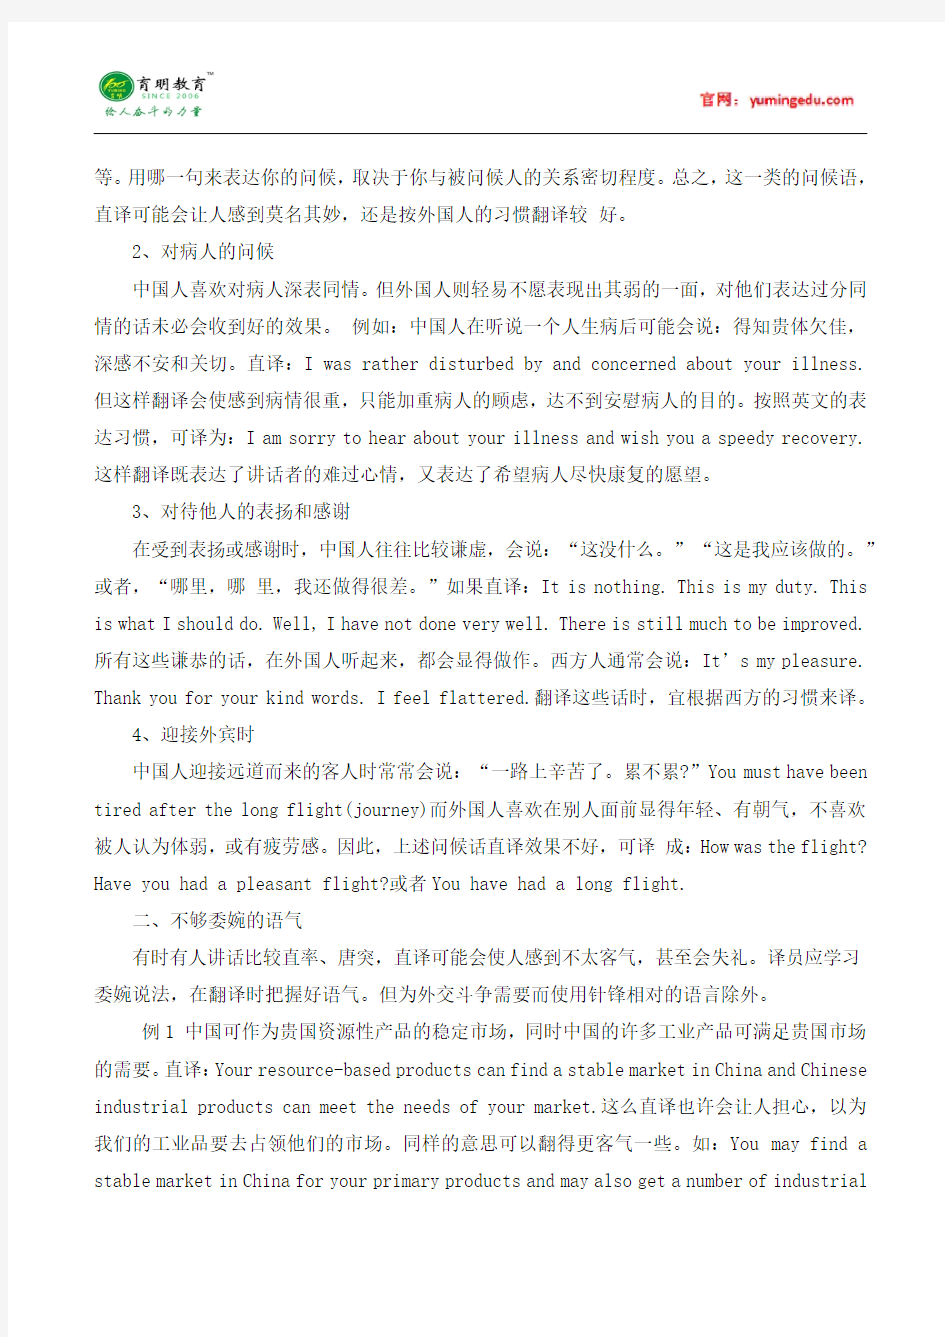 2015年北京大学翻译硕士汉语写作与百科知识考研真题,考研参考书,考研经验,考研大纲,考研辅导班资料